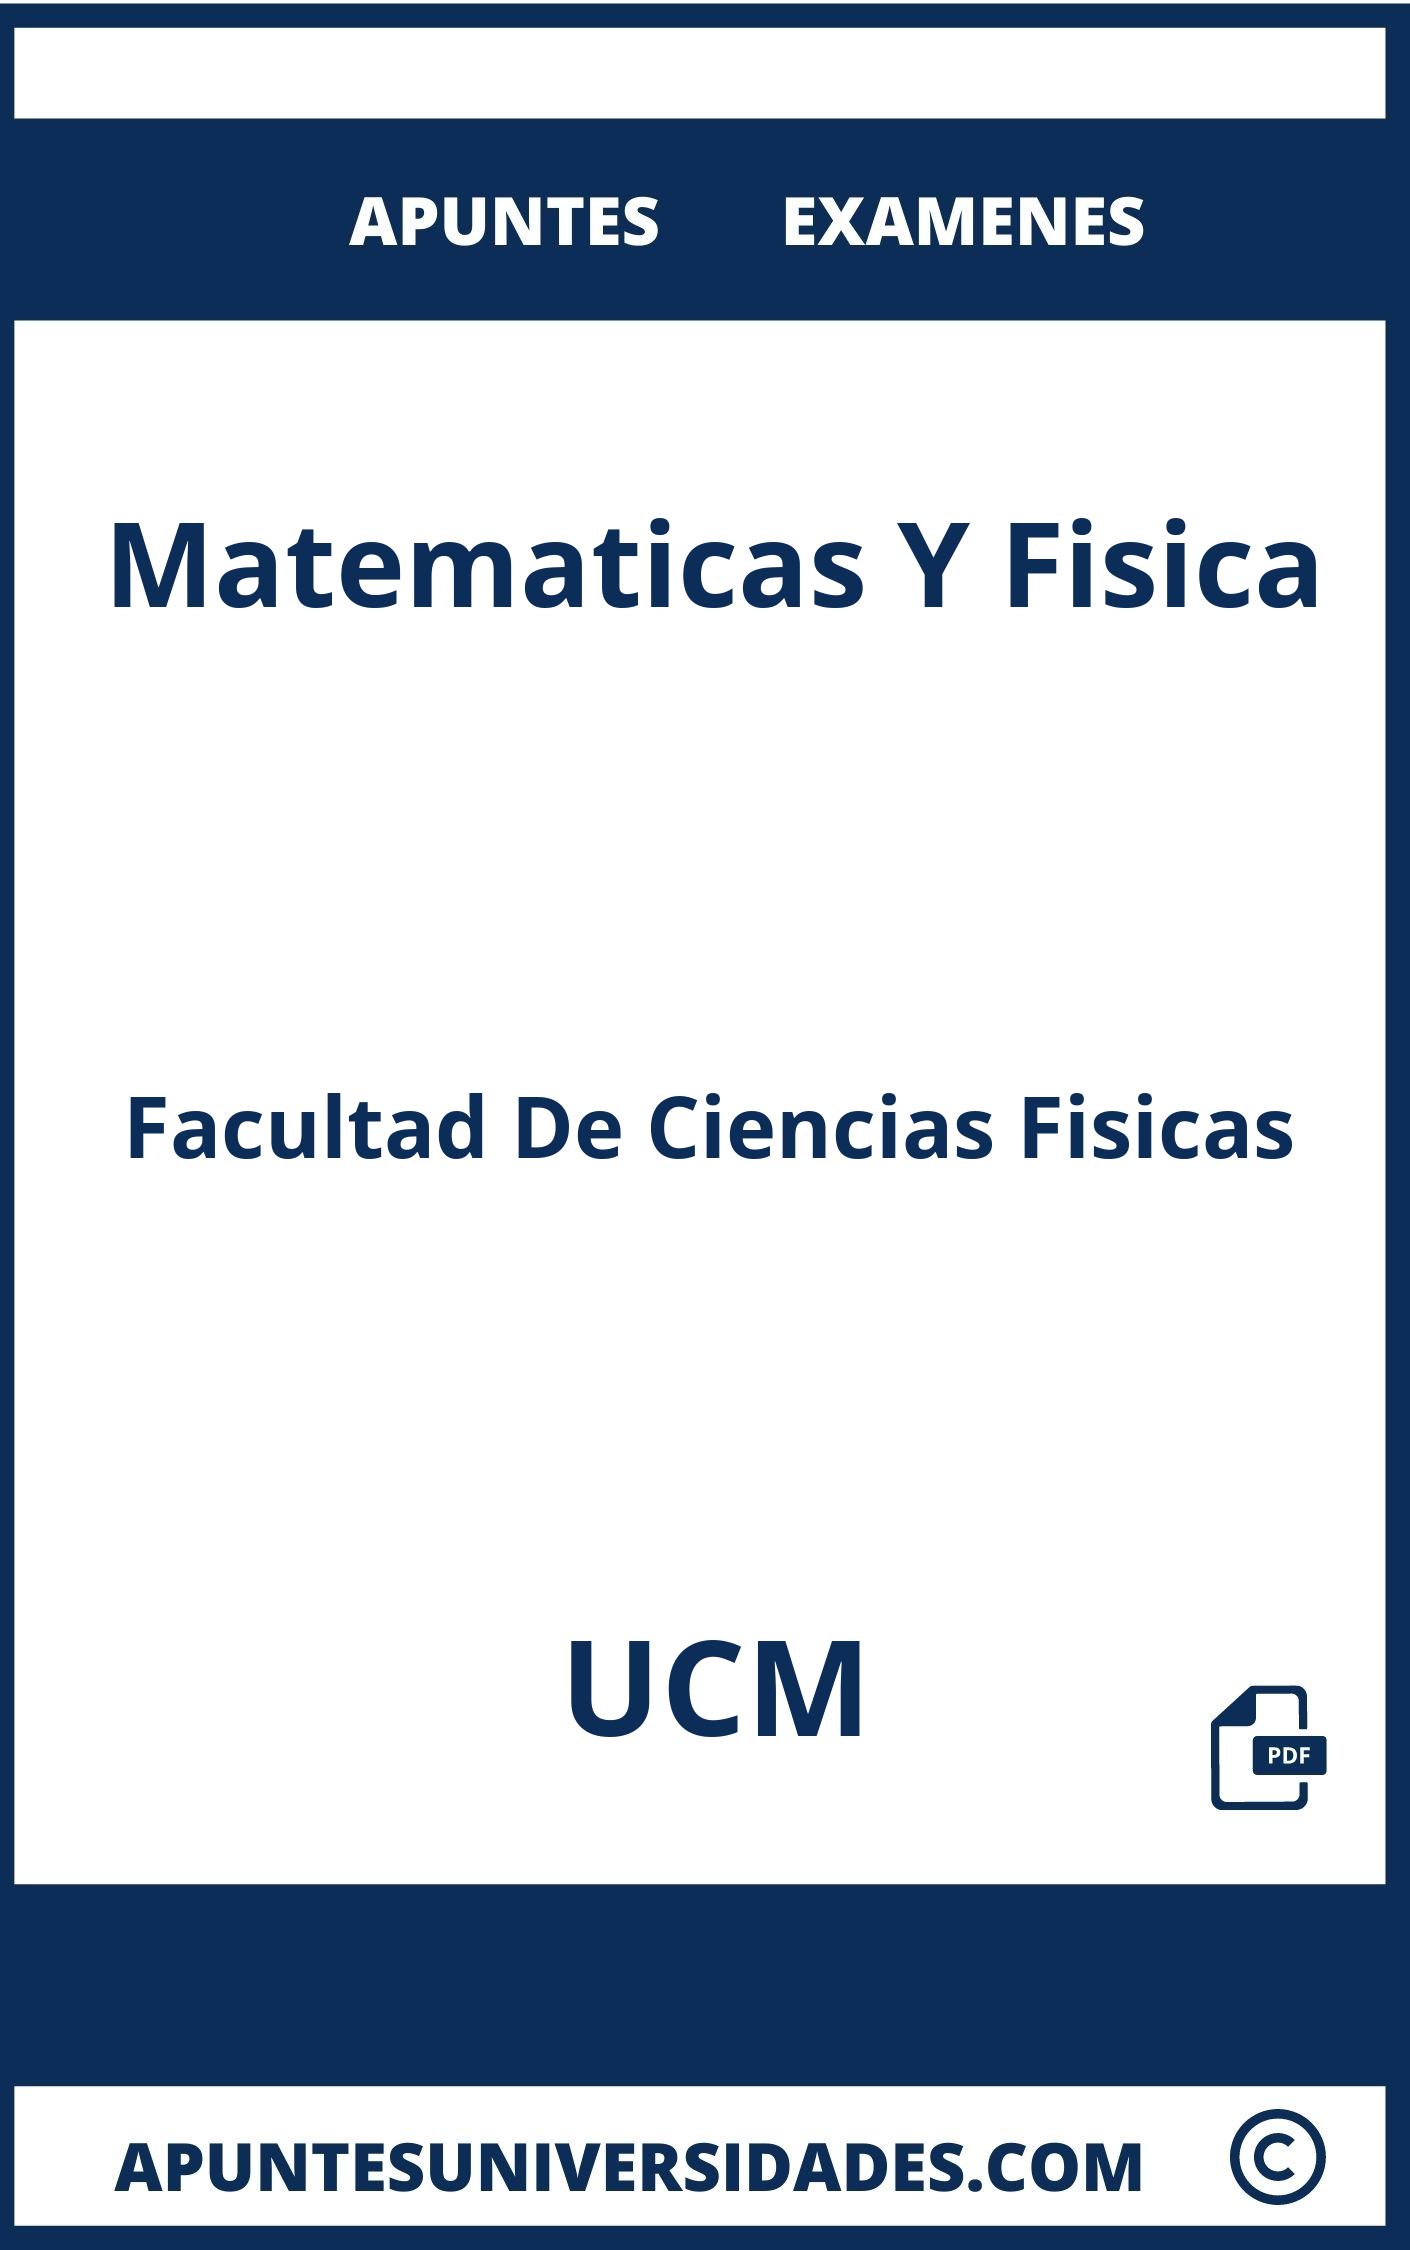 Apuntes y Examenes de Matematicas Y Fisica UCM